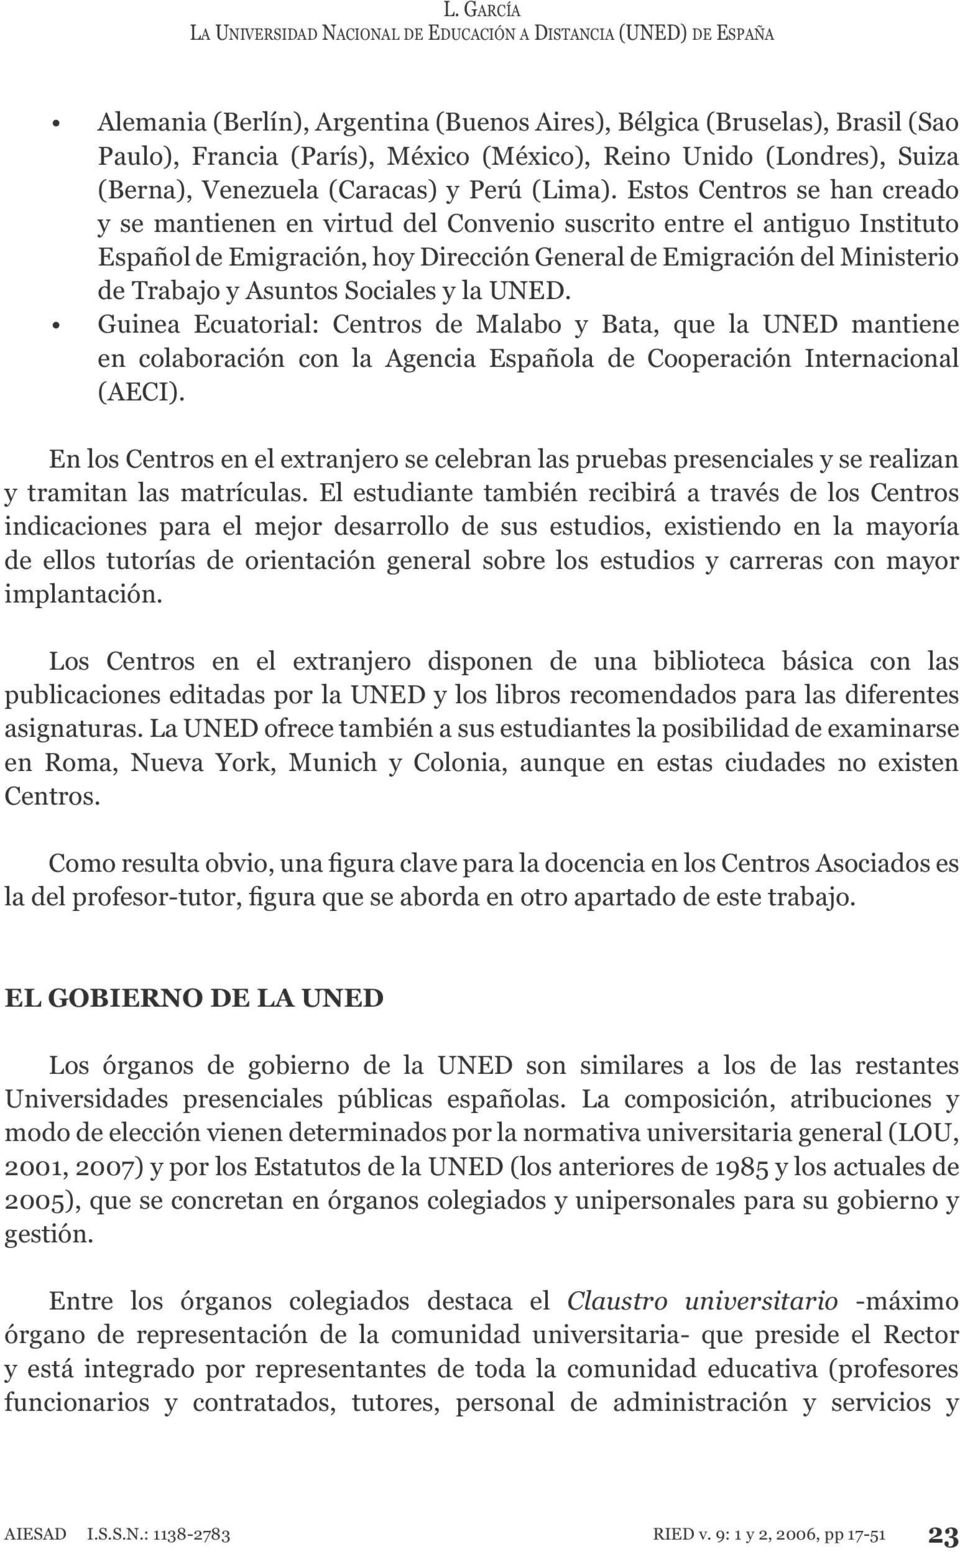 Guinea Ecuatorial: Centros de Malabo y Bata, que la UNED mantiene en colaboración con la Agencia Española de Cooperación Internacional (AECI). y tramitan las matrículas.